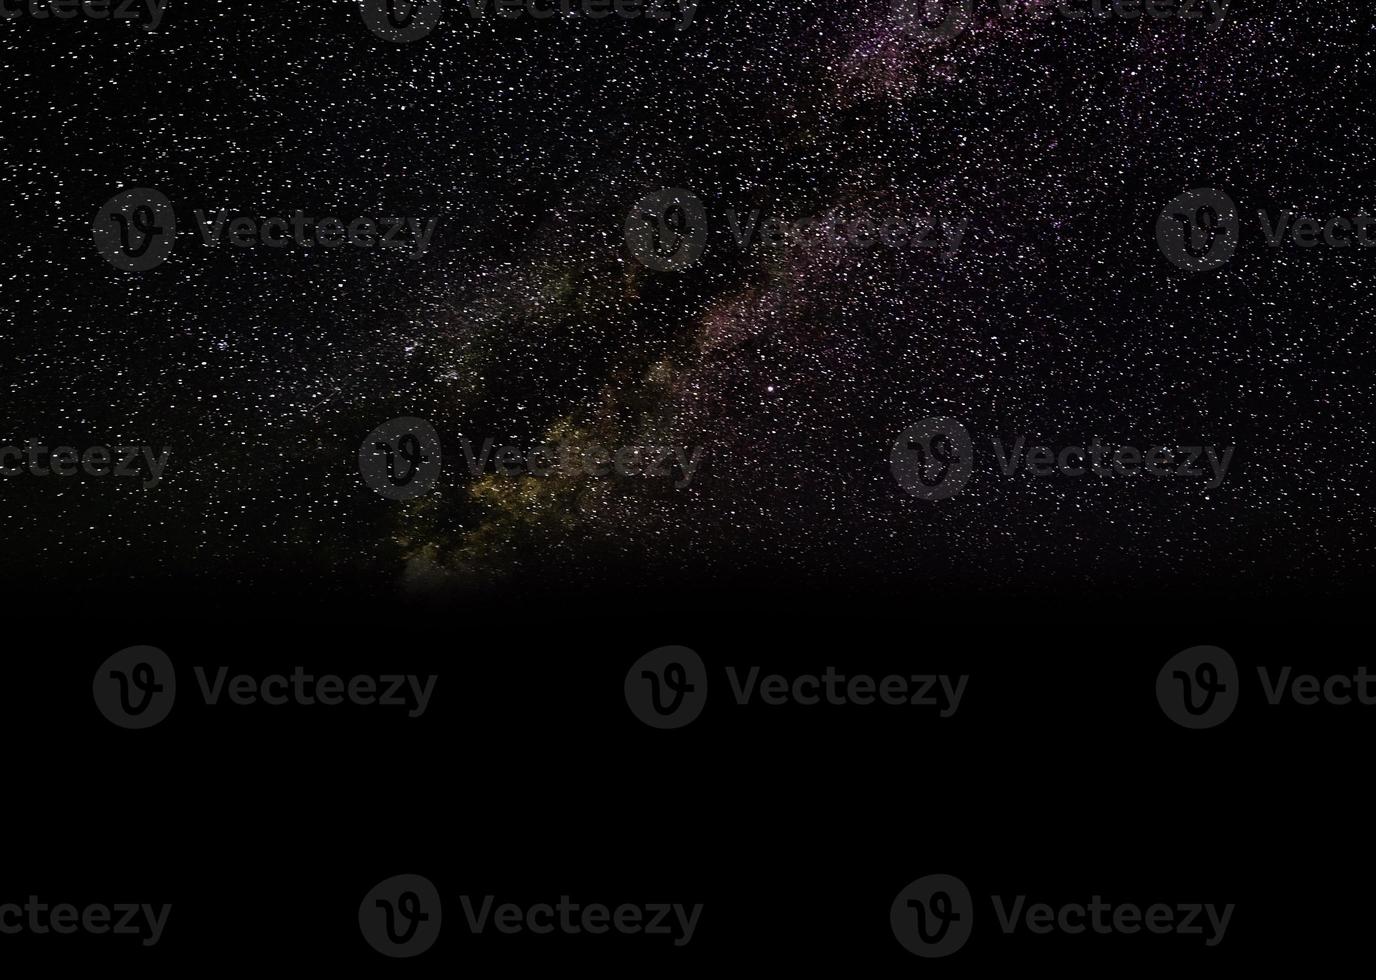 panorama dramatique noir de la galaxie de la nuit de l'espace de l'univers de la lune blanche sur le ciel nocturne photo